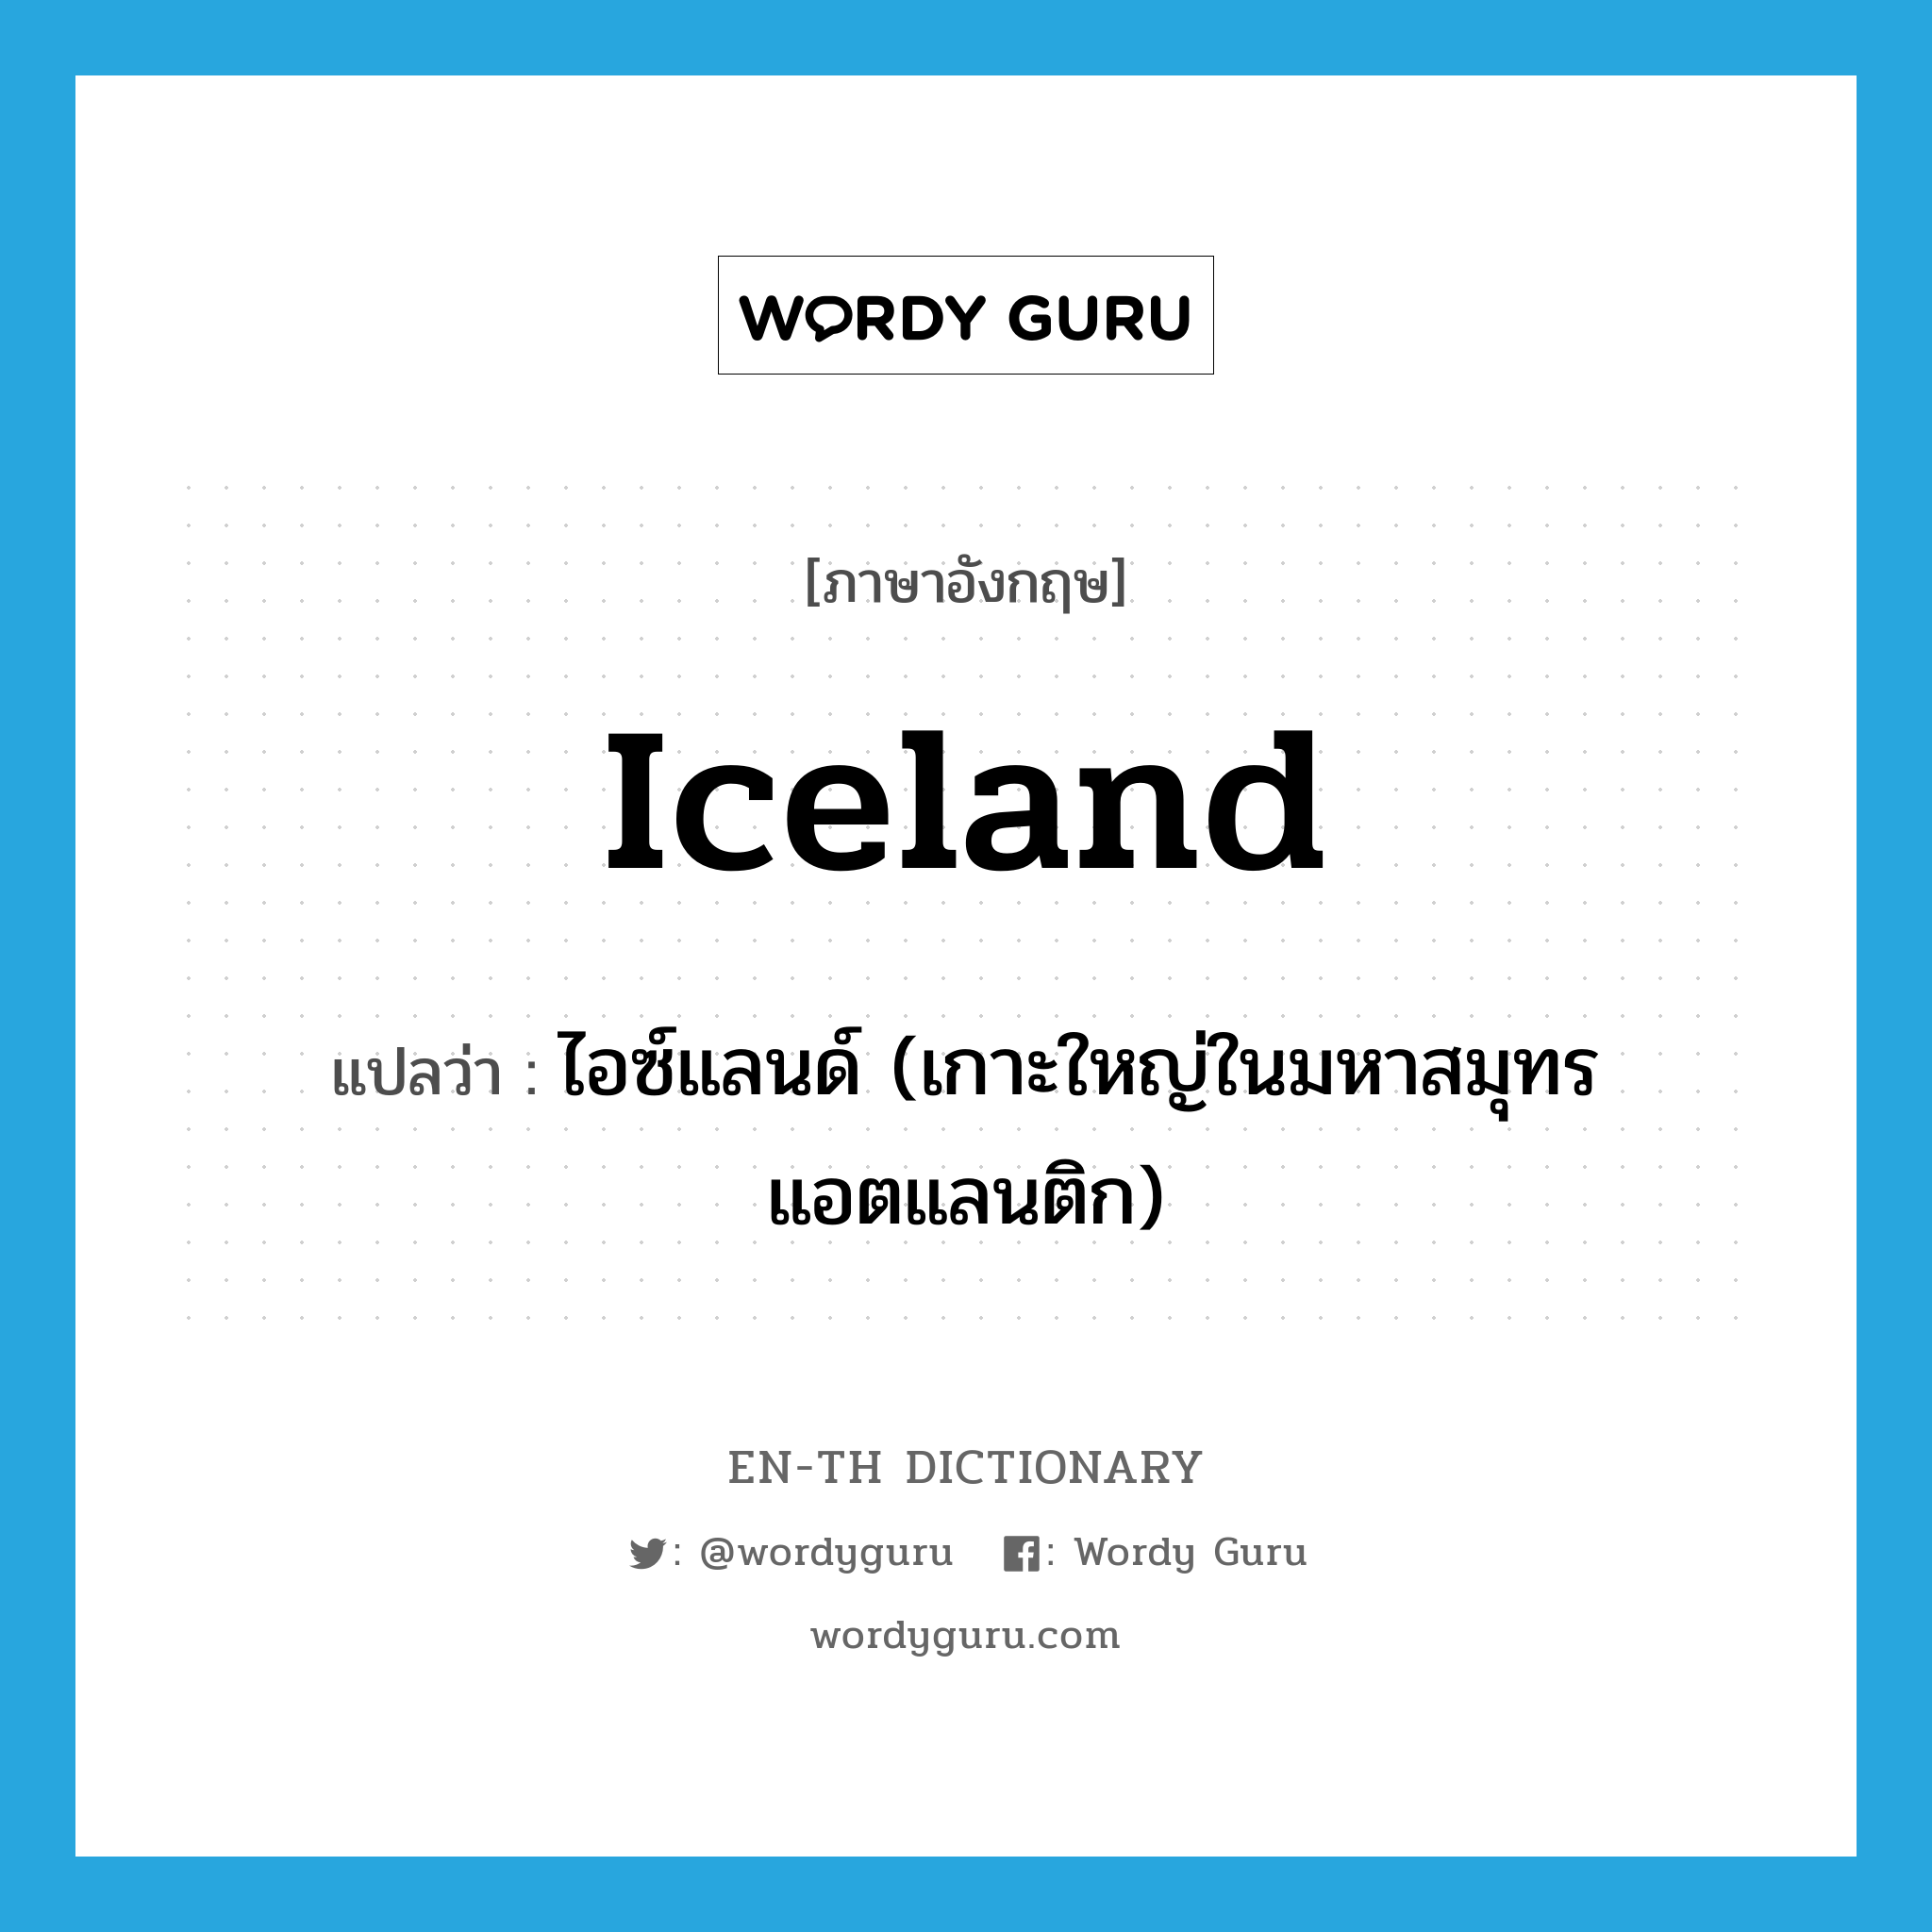 ไอซ์แลนด์ (เกาะใหญ่ในมหาสมุทรแอตแลนติก) ภาษาอังกฤษ?, คำศัพท์ภาษาอังกฤษ ไอซ์แลนด์ (เกาะใหญ่ในมหาสมุทรแอตแลนติก) แปลว่า Iceland ประเภท N หมวด N